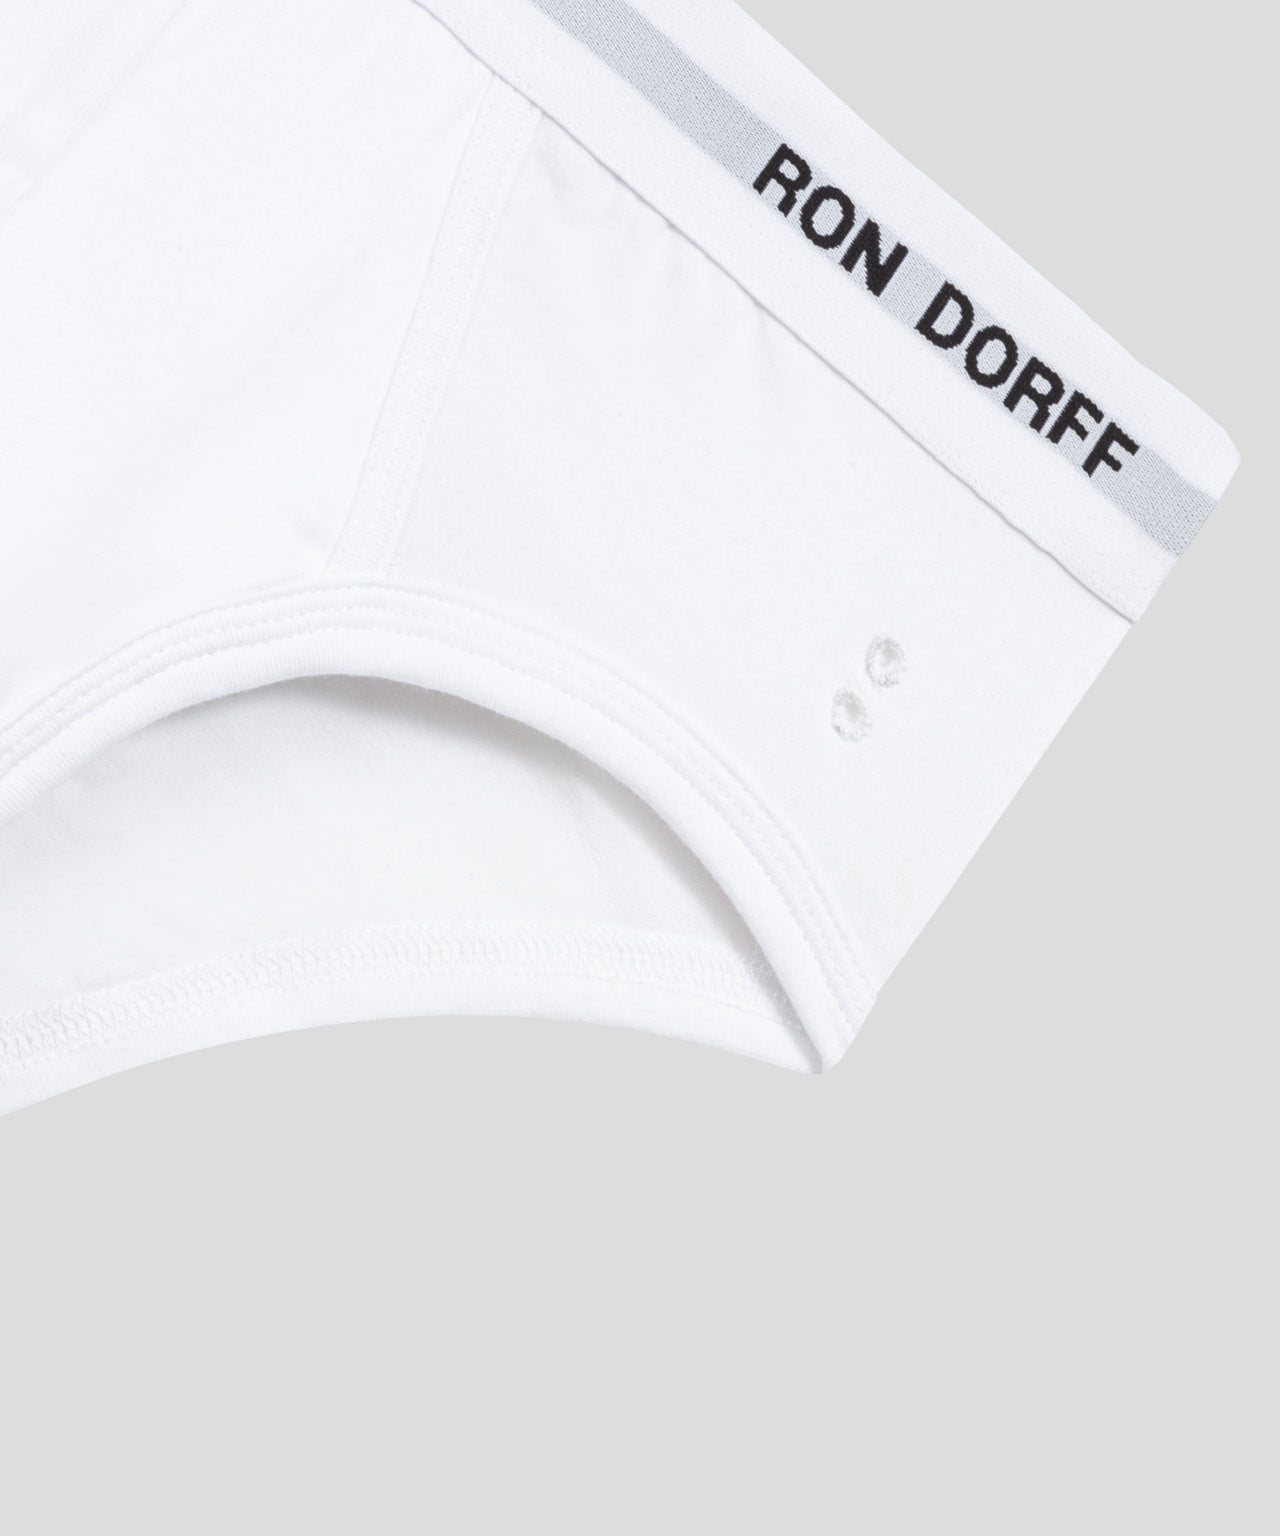 RON DORFF Y-Front Briefs: White